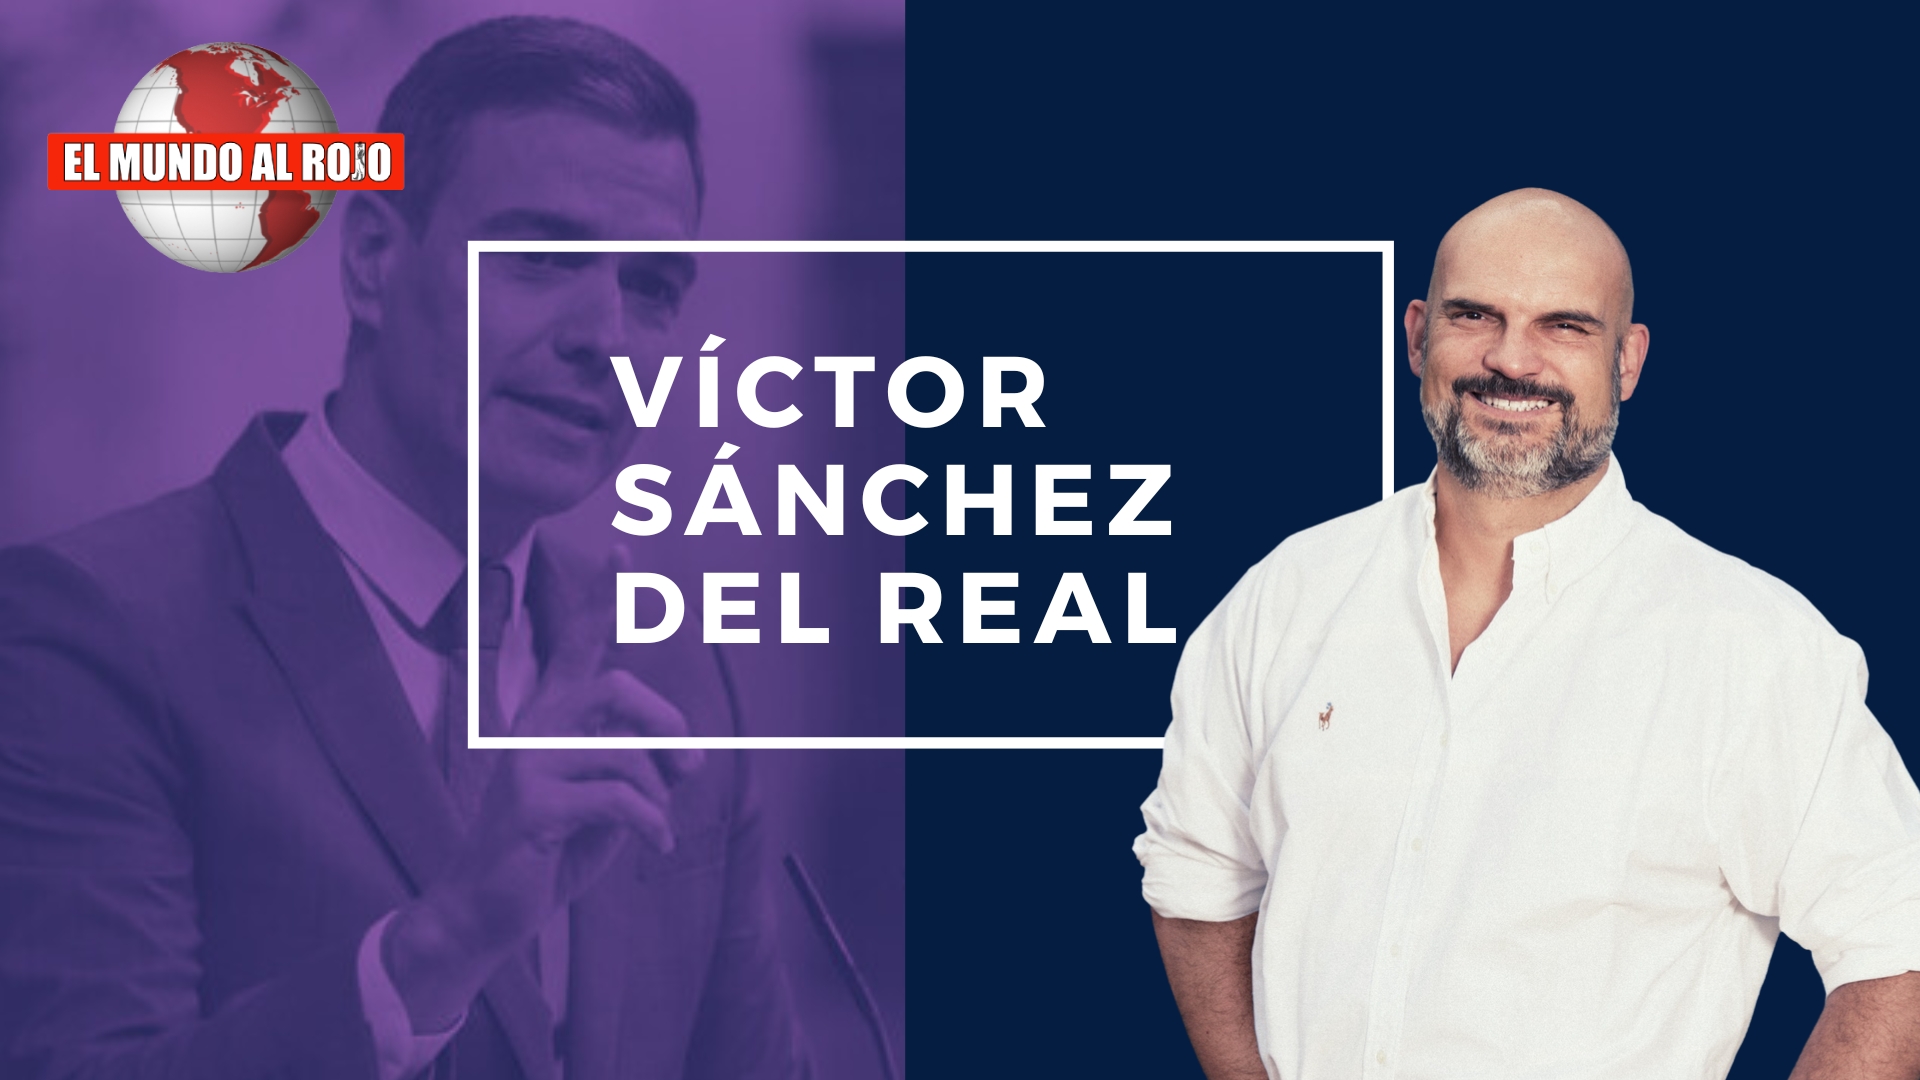 VICTOR SANCHEZ DEL REAL